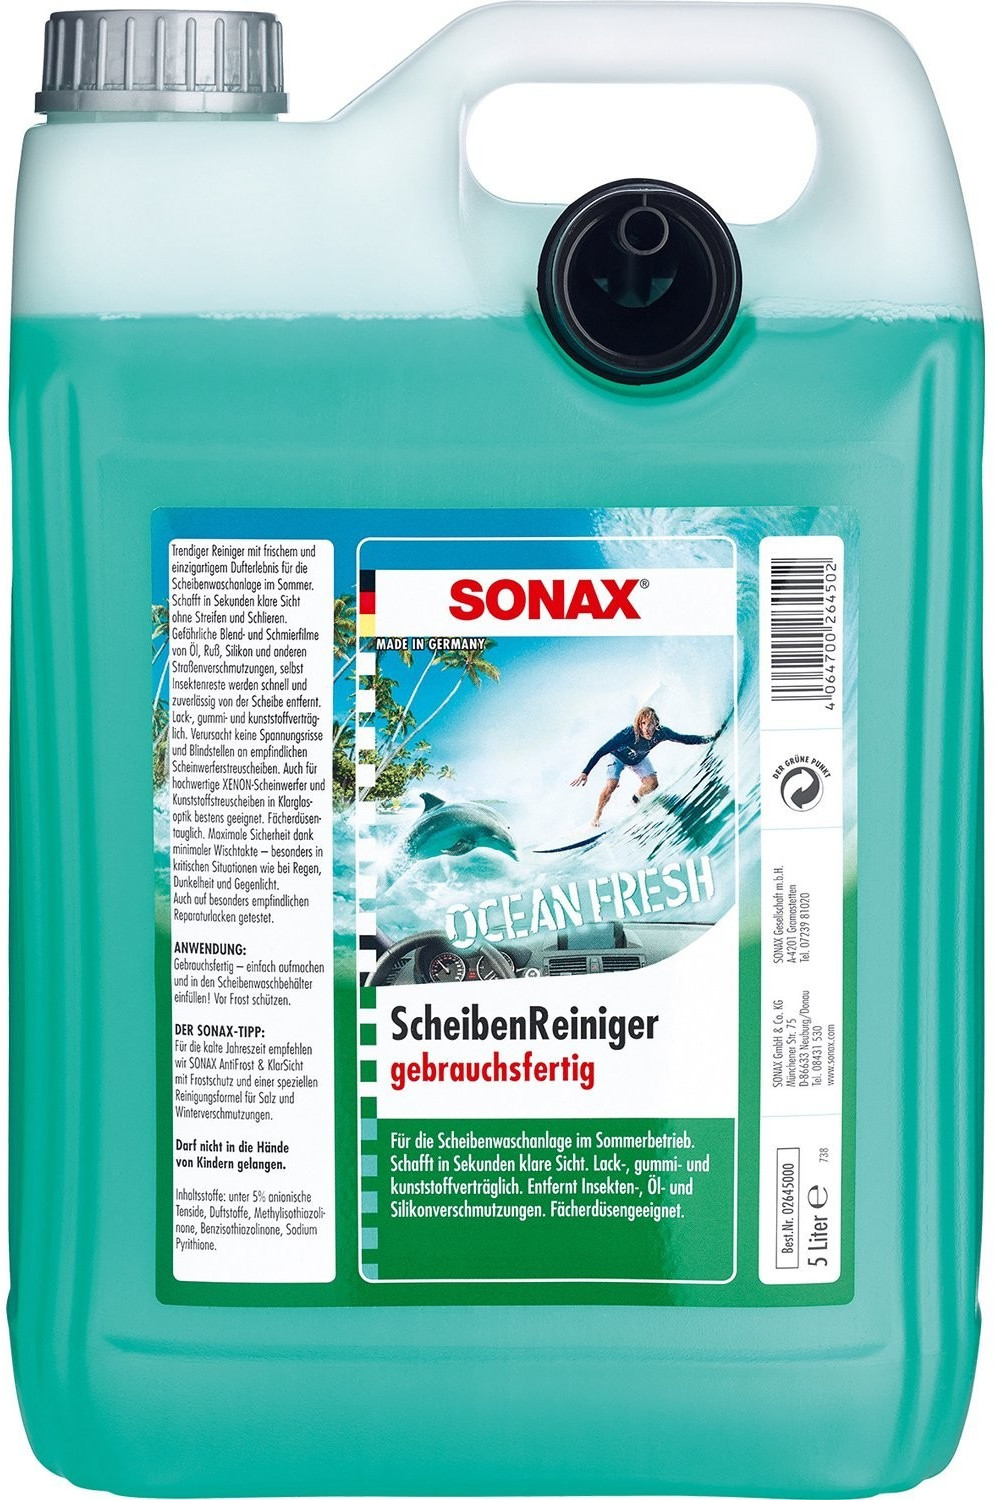 Sonax 02645000 ScheibenReiniger gebrauchsfertig Ocean-Fresh 5 l ab